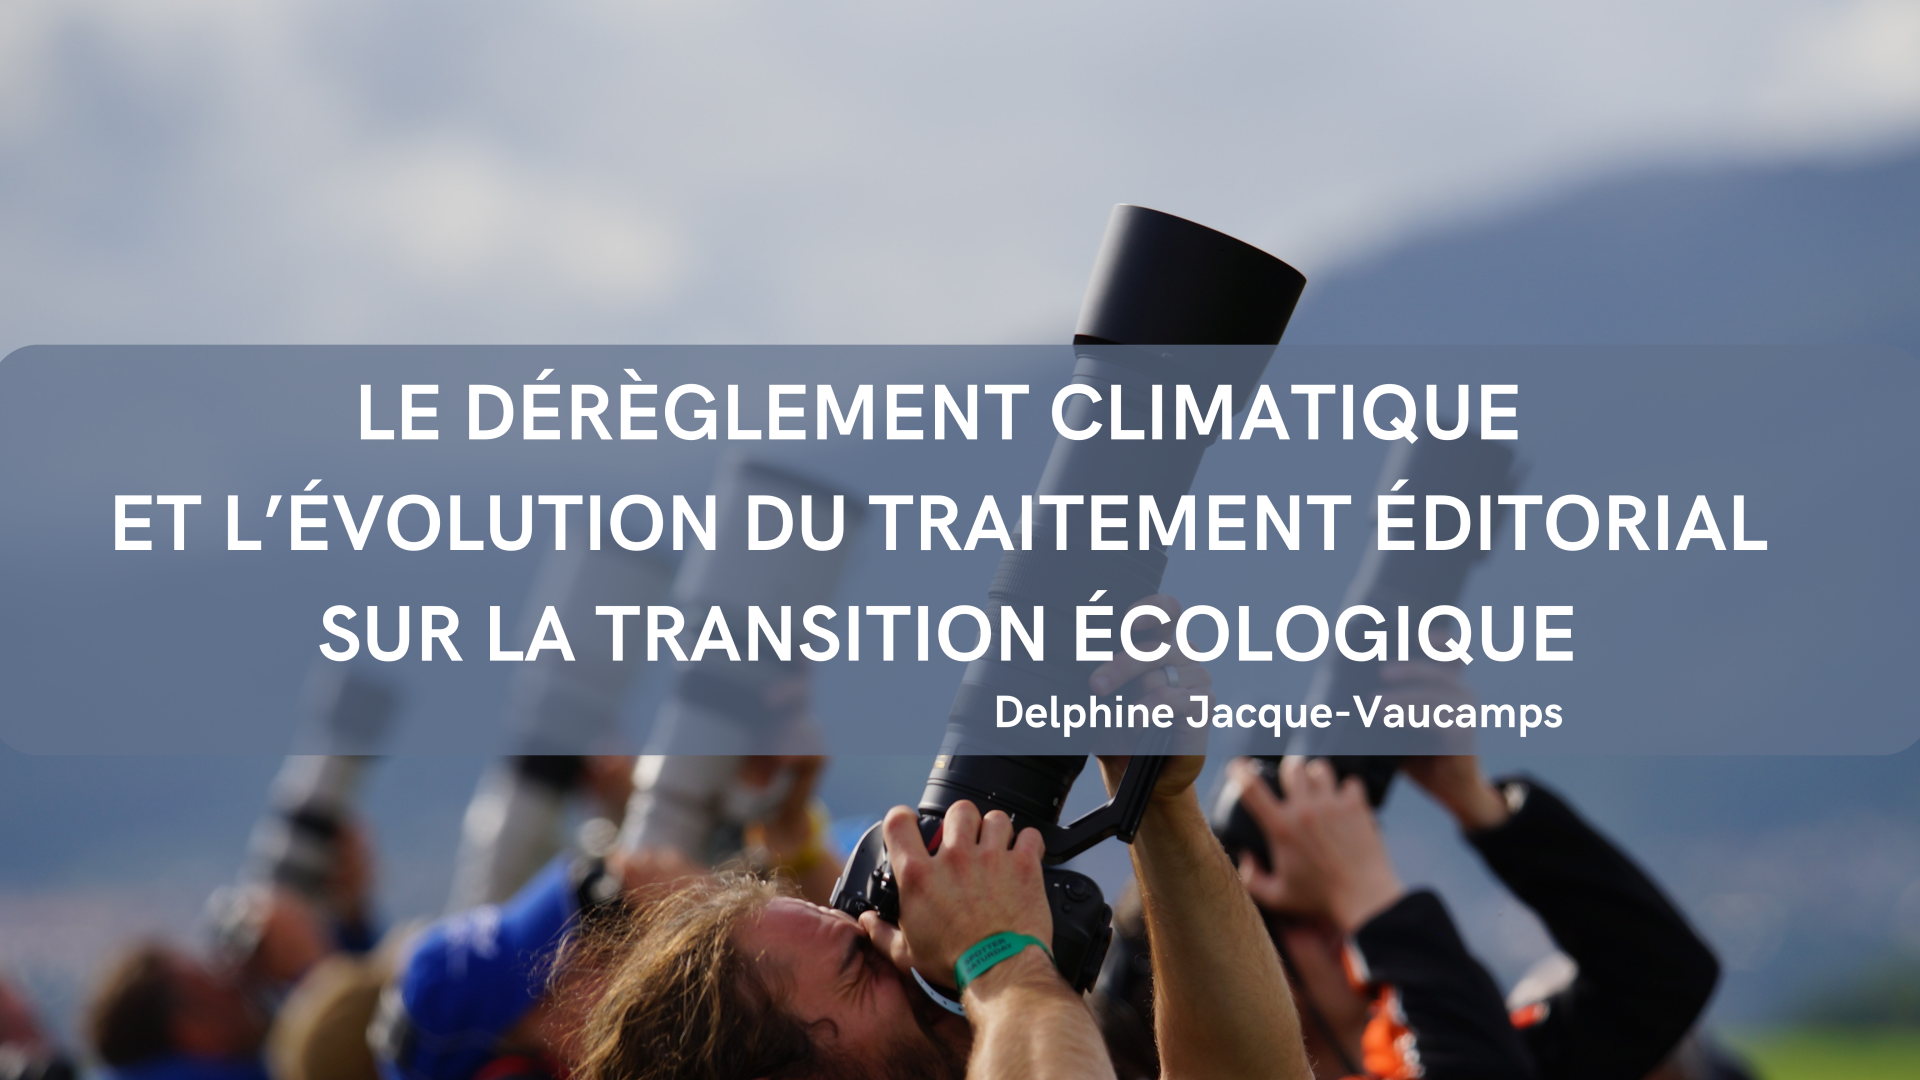 Le dérèglement climatique et l’évolution du traitement éditorial sur la transition écologique